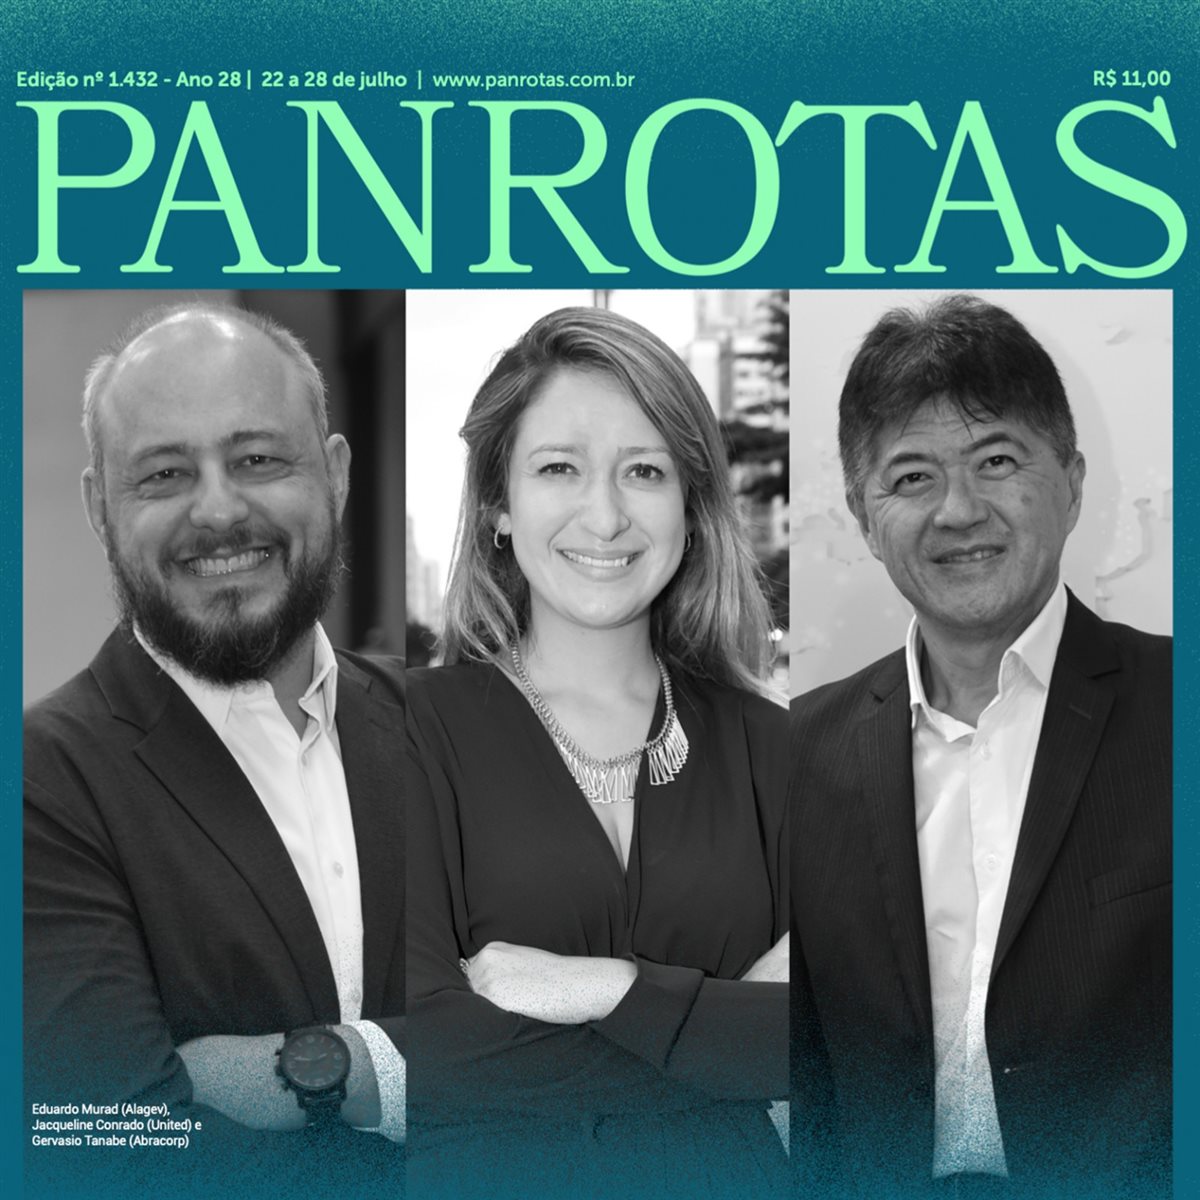 Capa da Revista PANROTAS 1.432 traz matéria completa sobre mudanças urgentes de que o setor de viagens corporativas precisa